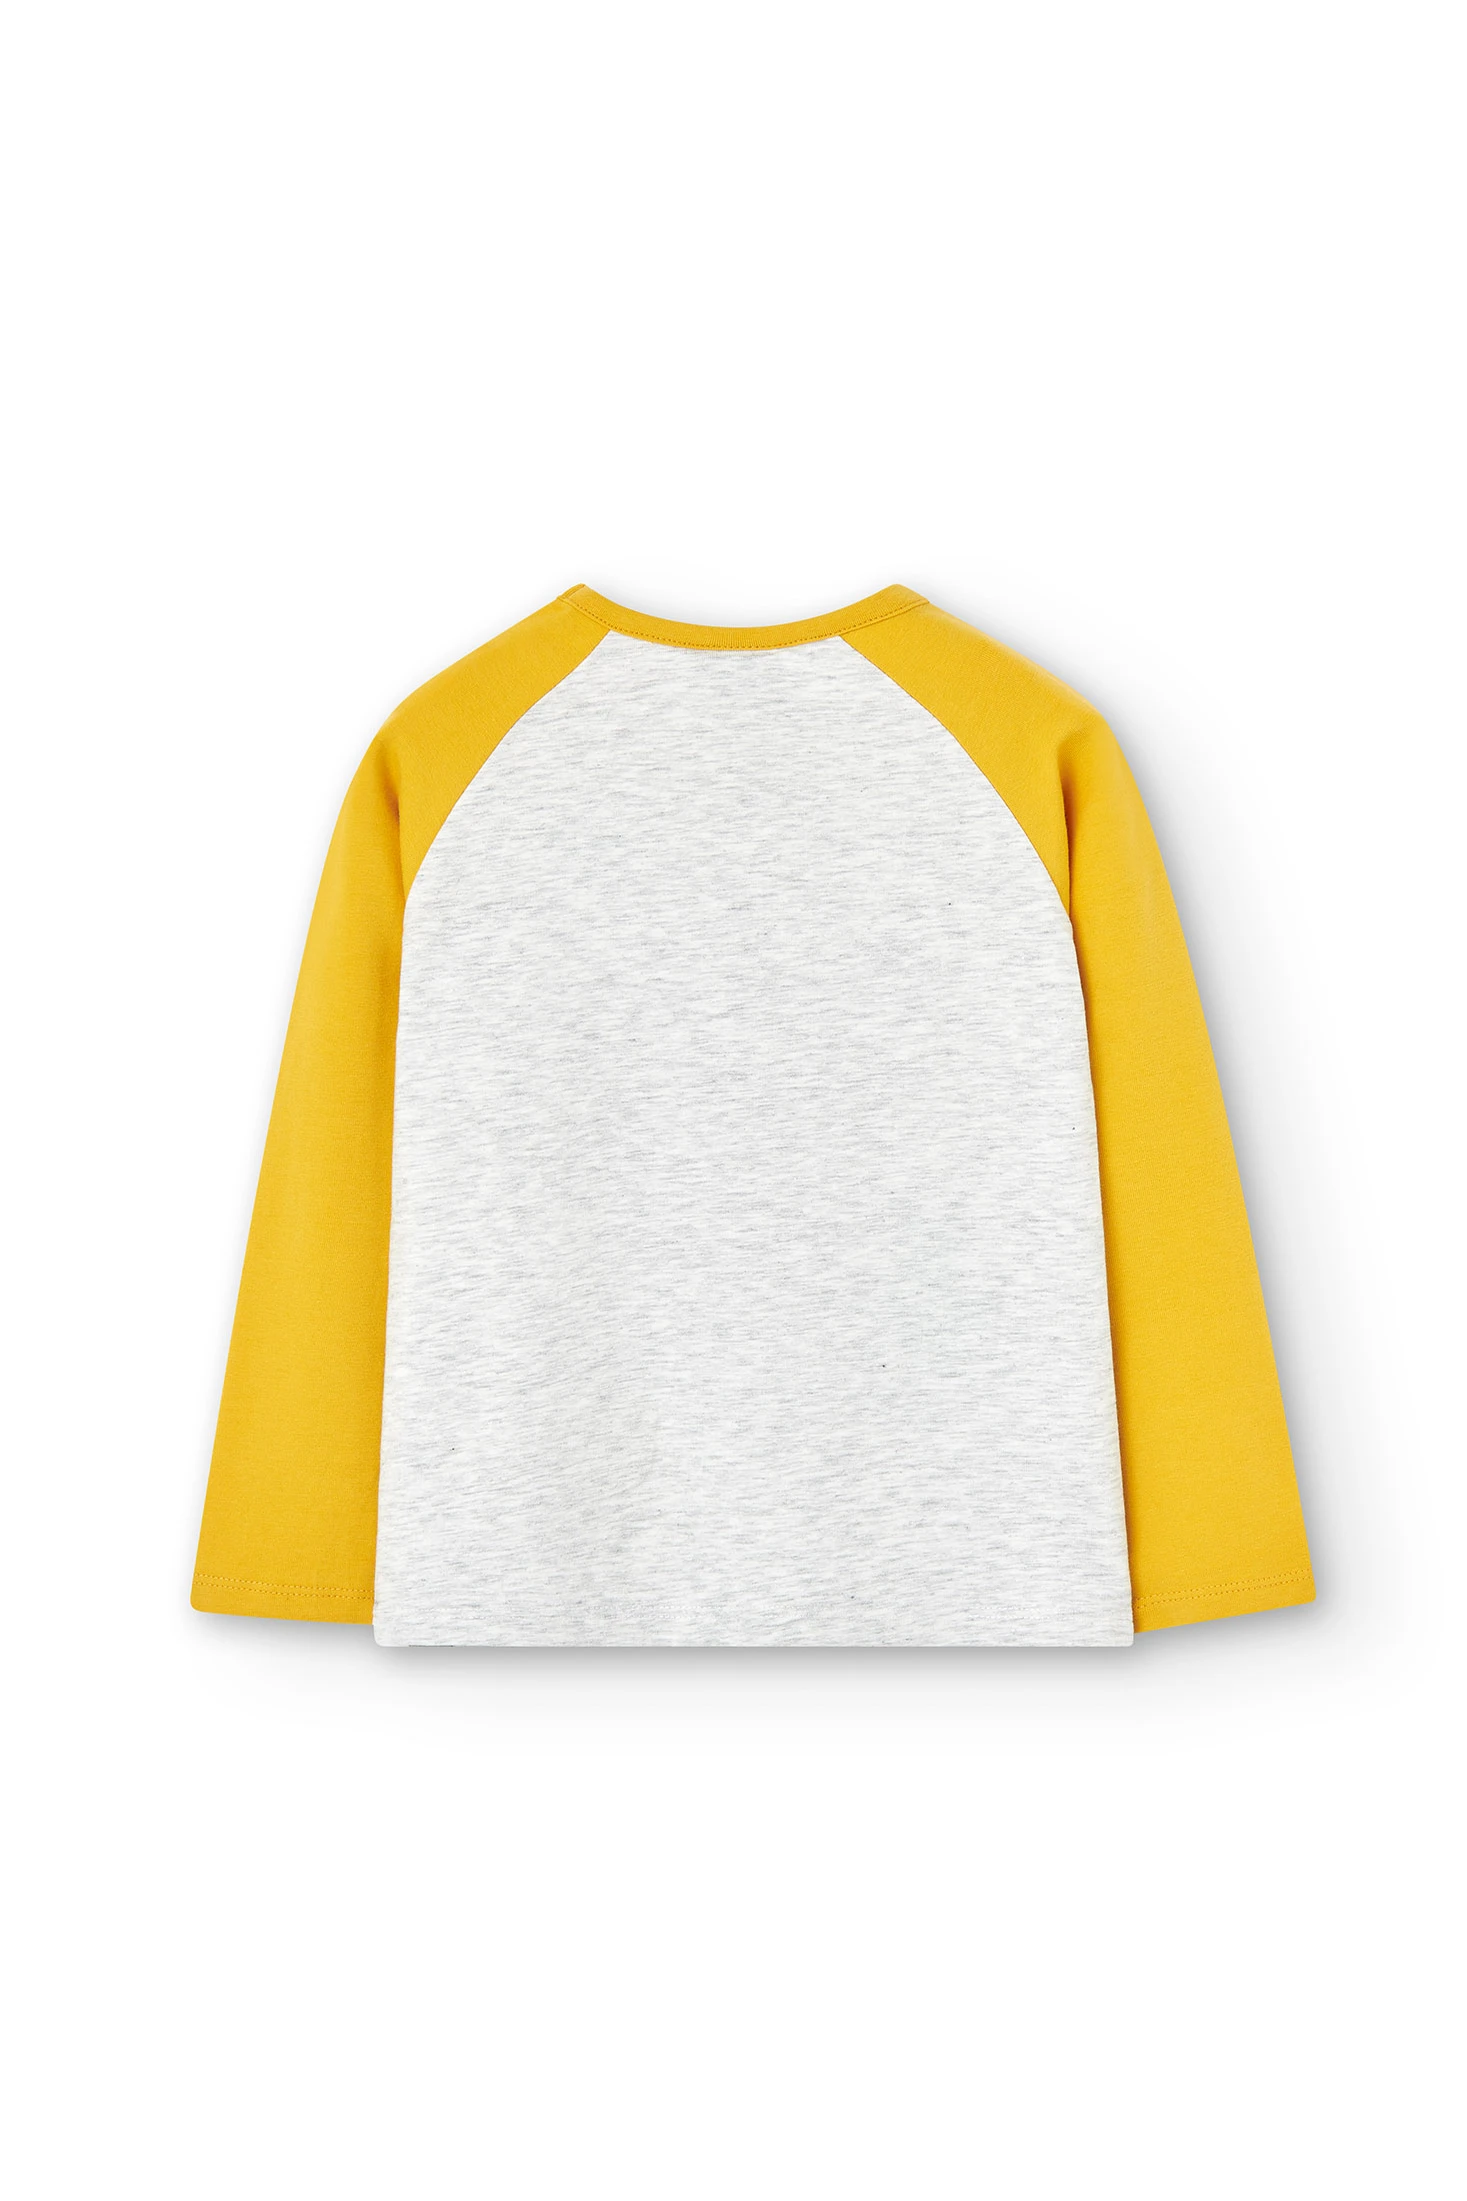 Camiseta motivo pop niña de manga corta con vuelta amarillo pálido -  Vertbaudet